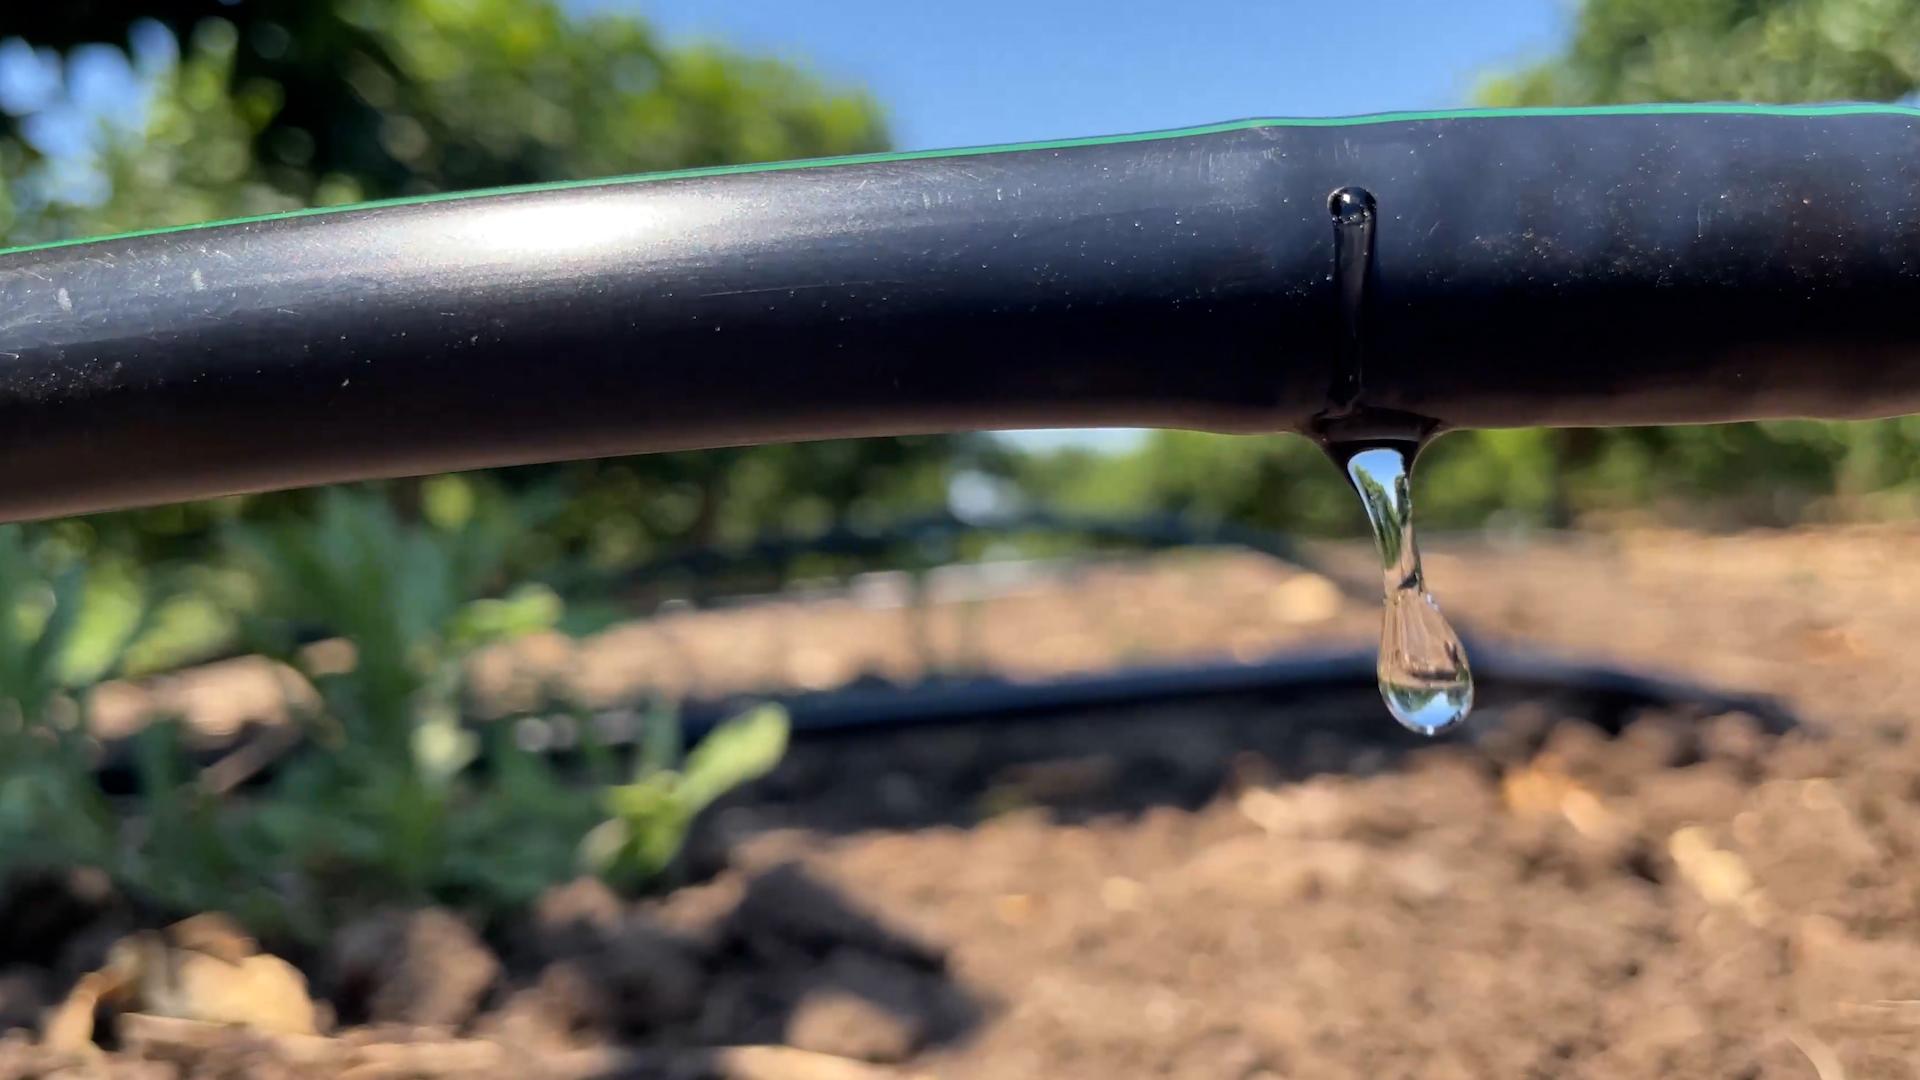 Tecnologie e strategie per il risparmio idrico  Focus sull'irrigazione deficitaria in agrumicoltura Nell'ultima puntata de“ La natura dal campo alla tavola” in onda su 7Gold